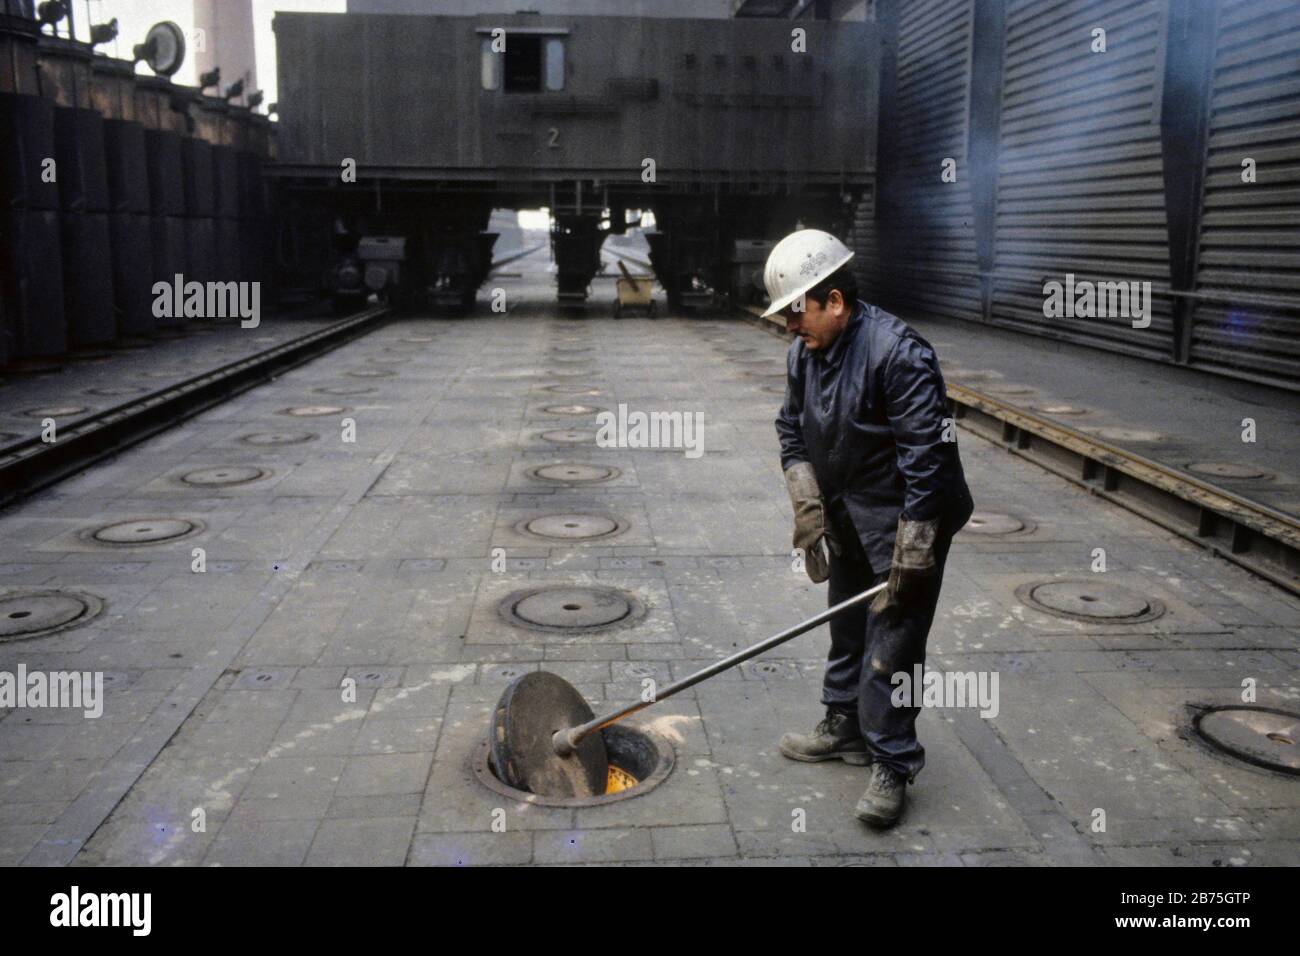 Arbeiter an der Ofendecke der Kokerei Zollverein am 17.11.1985. [Automatisierte Übersetzung] Stockfoto